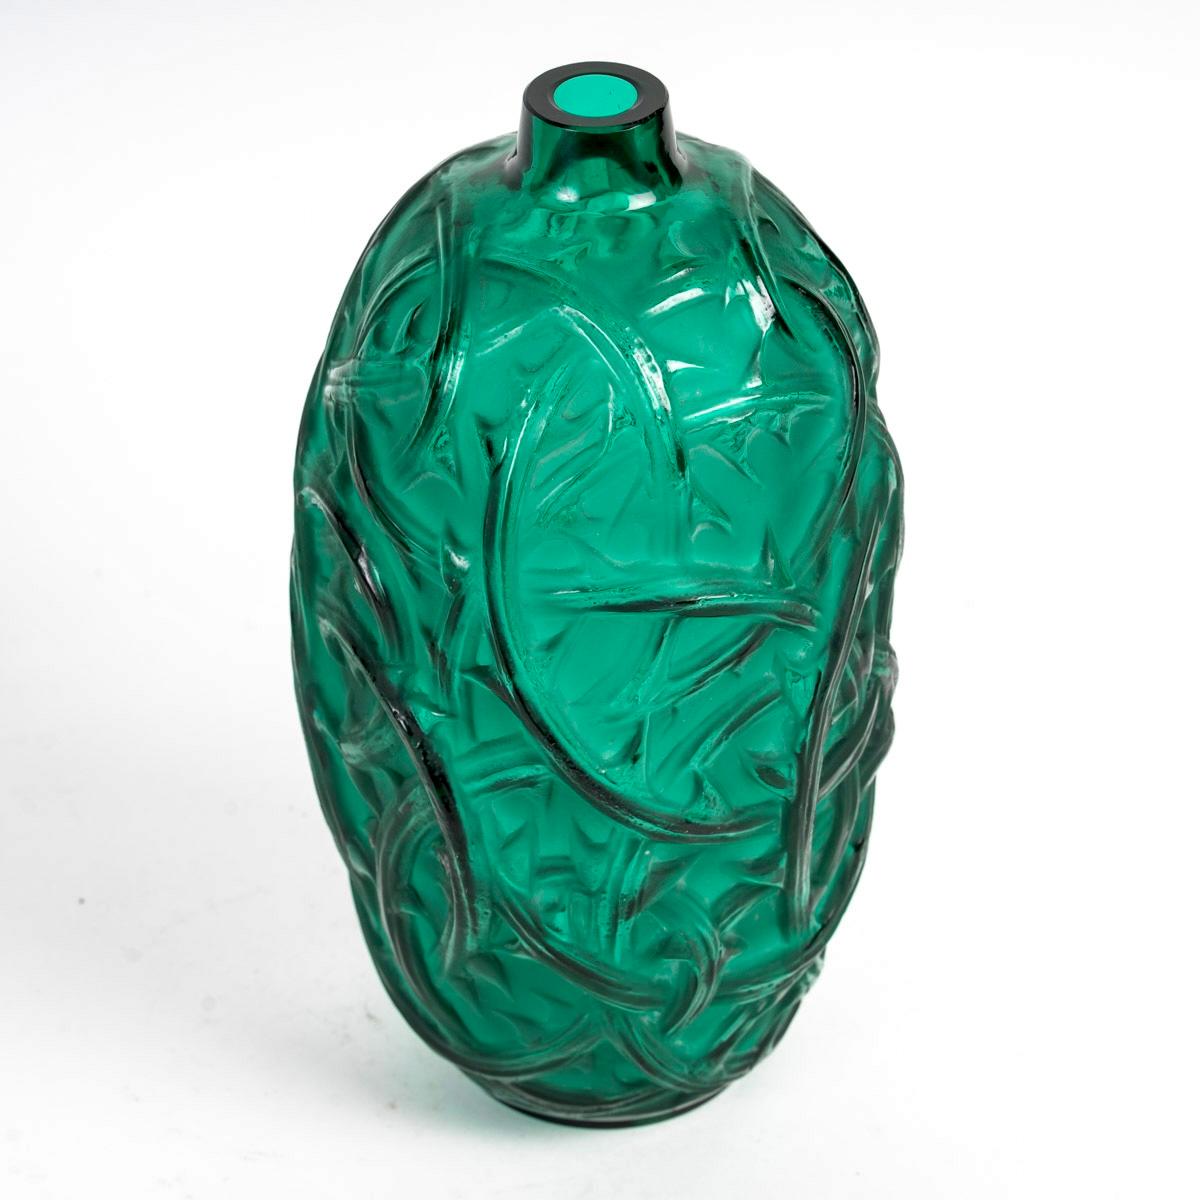 Vase “Ronces” made in emerald green glass by René Lalique in 1921.
Molded signature and engraved control signature. 

Perfect condition. Exceptional color.

height: 23.5 cm

Félix Marcilhac, René Lalique - Catalogue Raisonné de l'Œuvre de Verre, Les